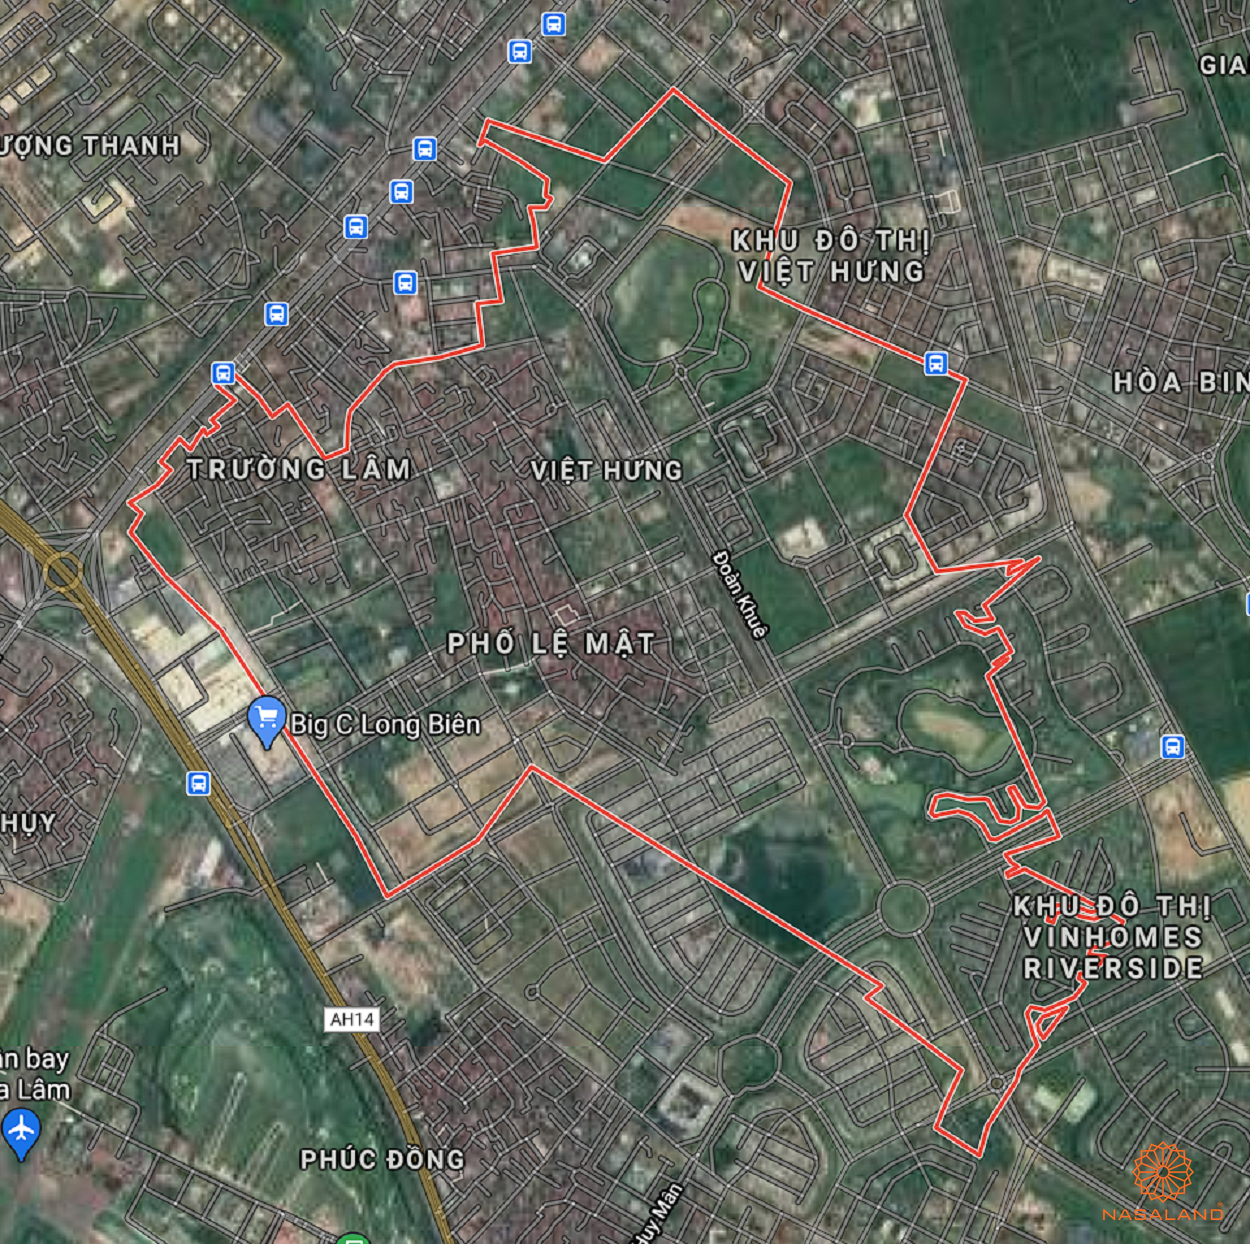 Bản đồ quy hoạch sử dụng đất Phường Việt Hưng theo bản đồ quy hoạch sử dụng đất năm 2020 Quận Long Biên, Thành phố Hà Nội.